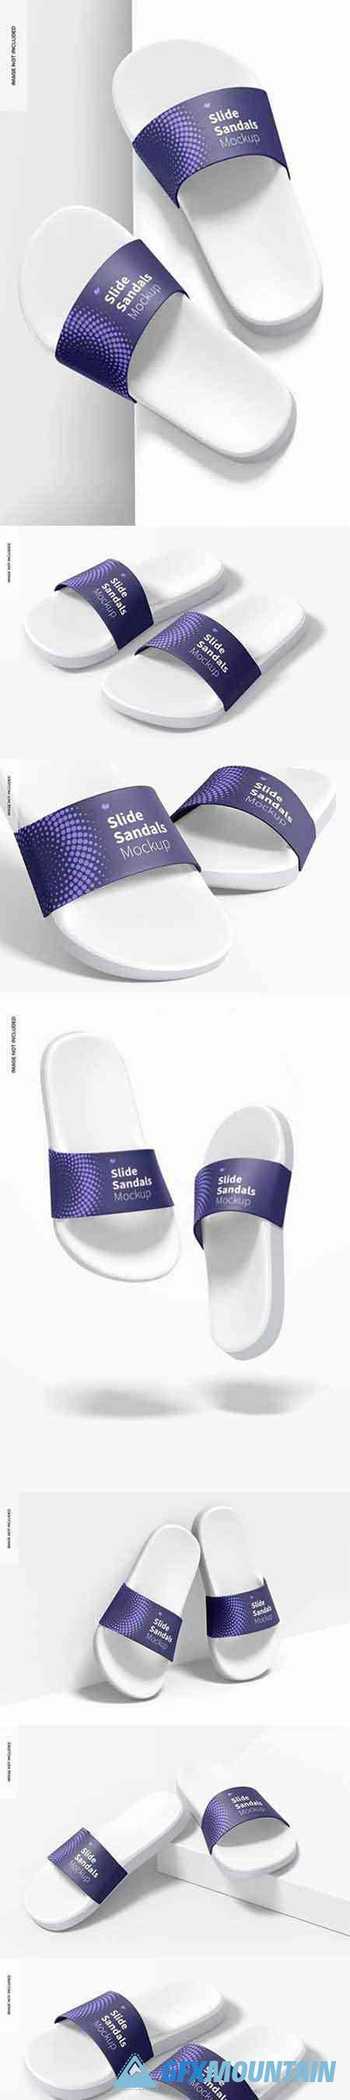 Slide sandals mockup